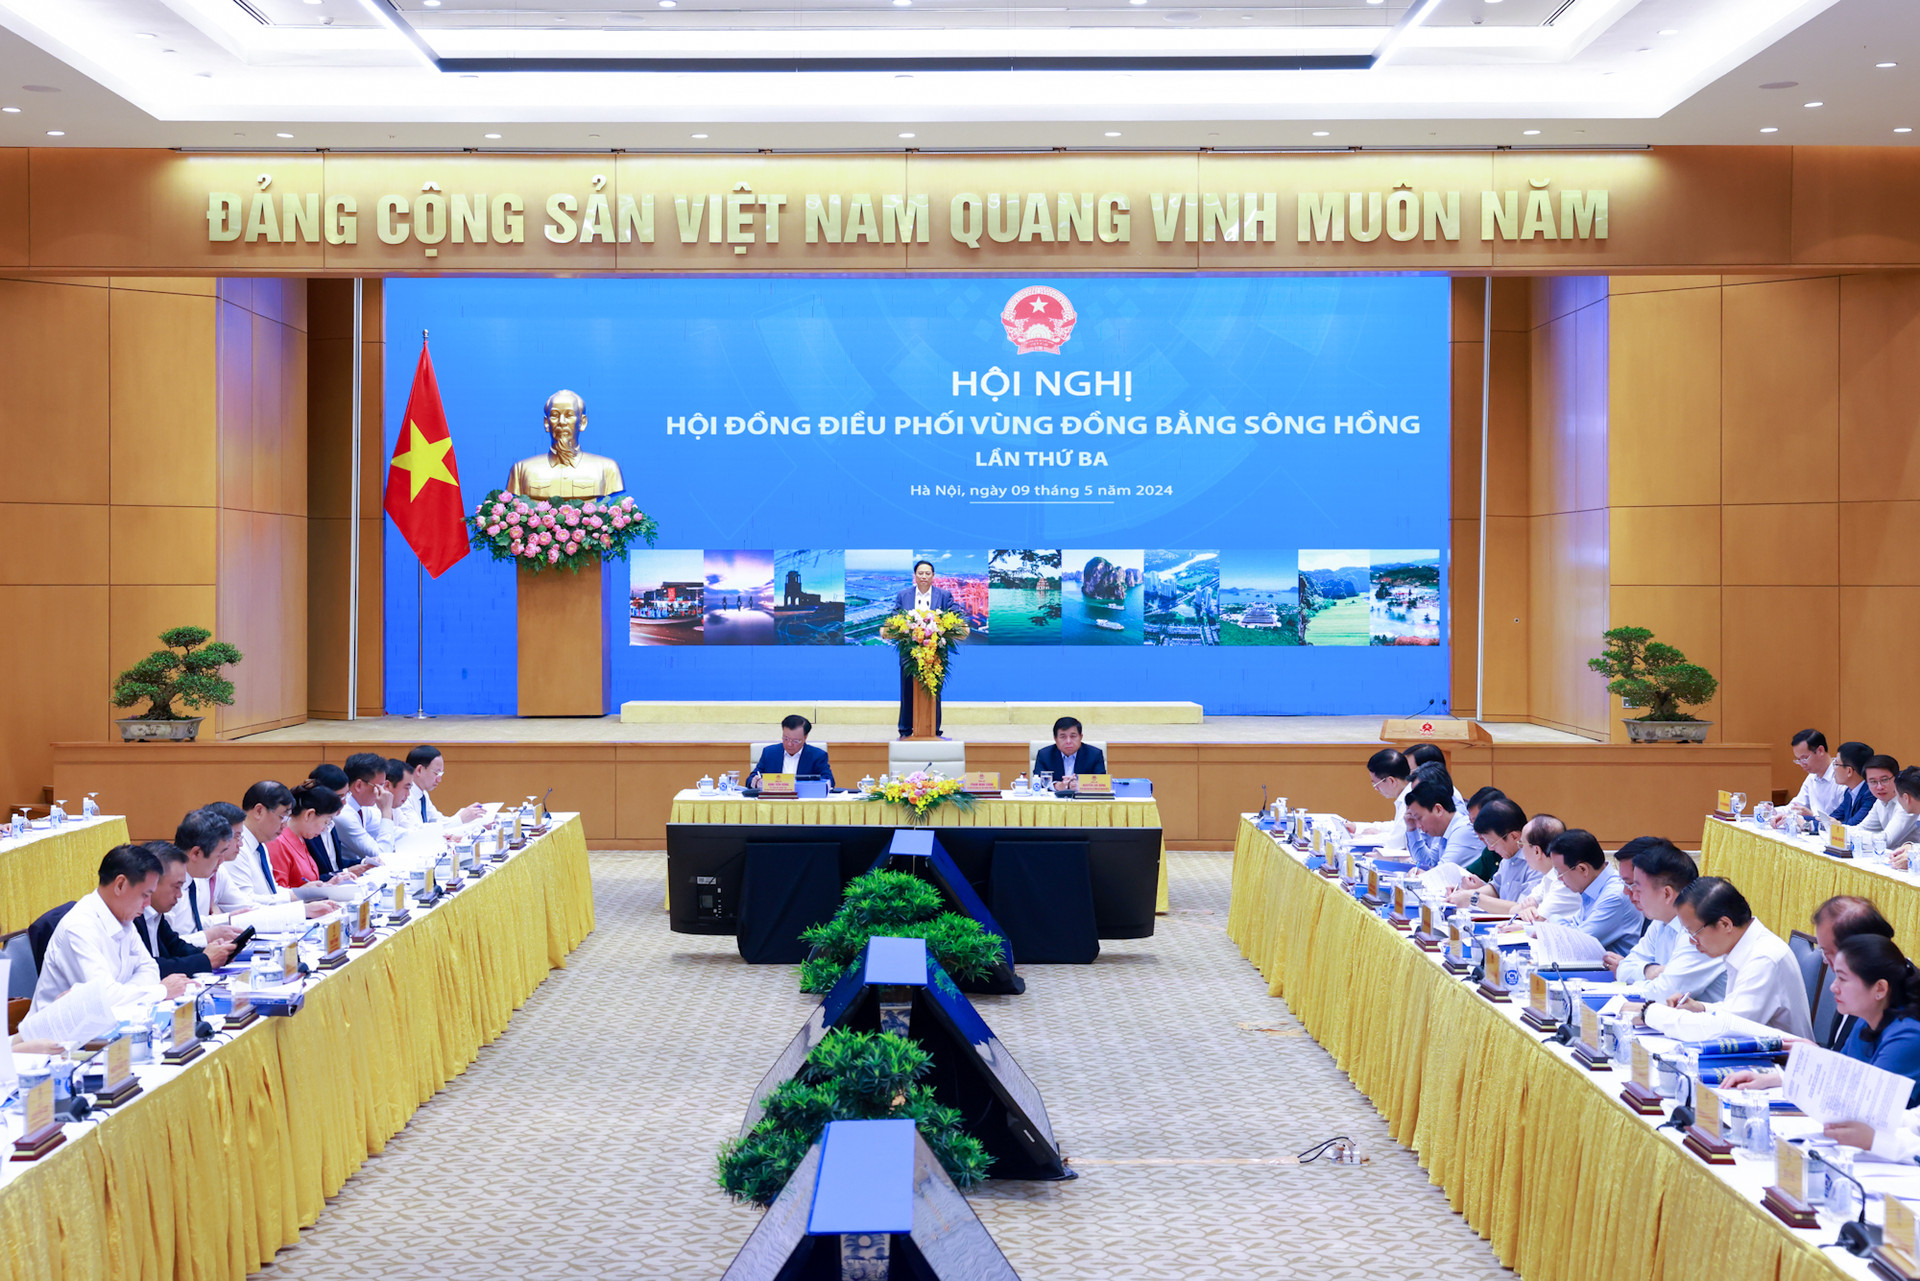 Thủ tướng Phạm Minh Chính chủ trì Hội nghị lần thứ 3 Hội đồng điều phối vùng Đồng bằng sông Hồng- Ảnh 2.